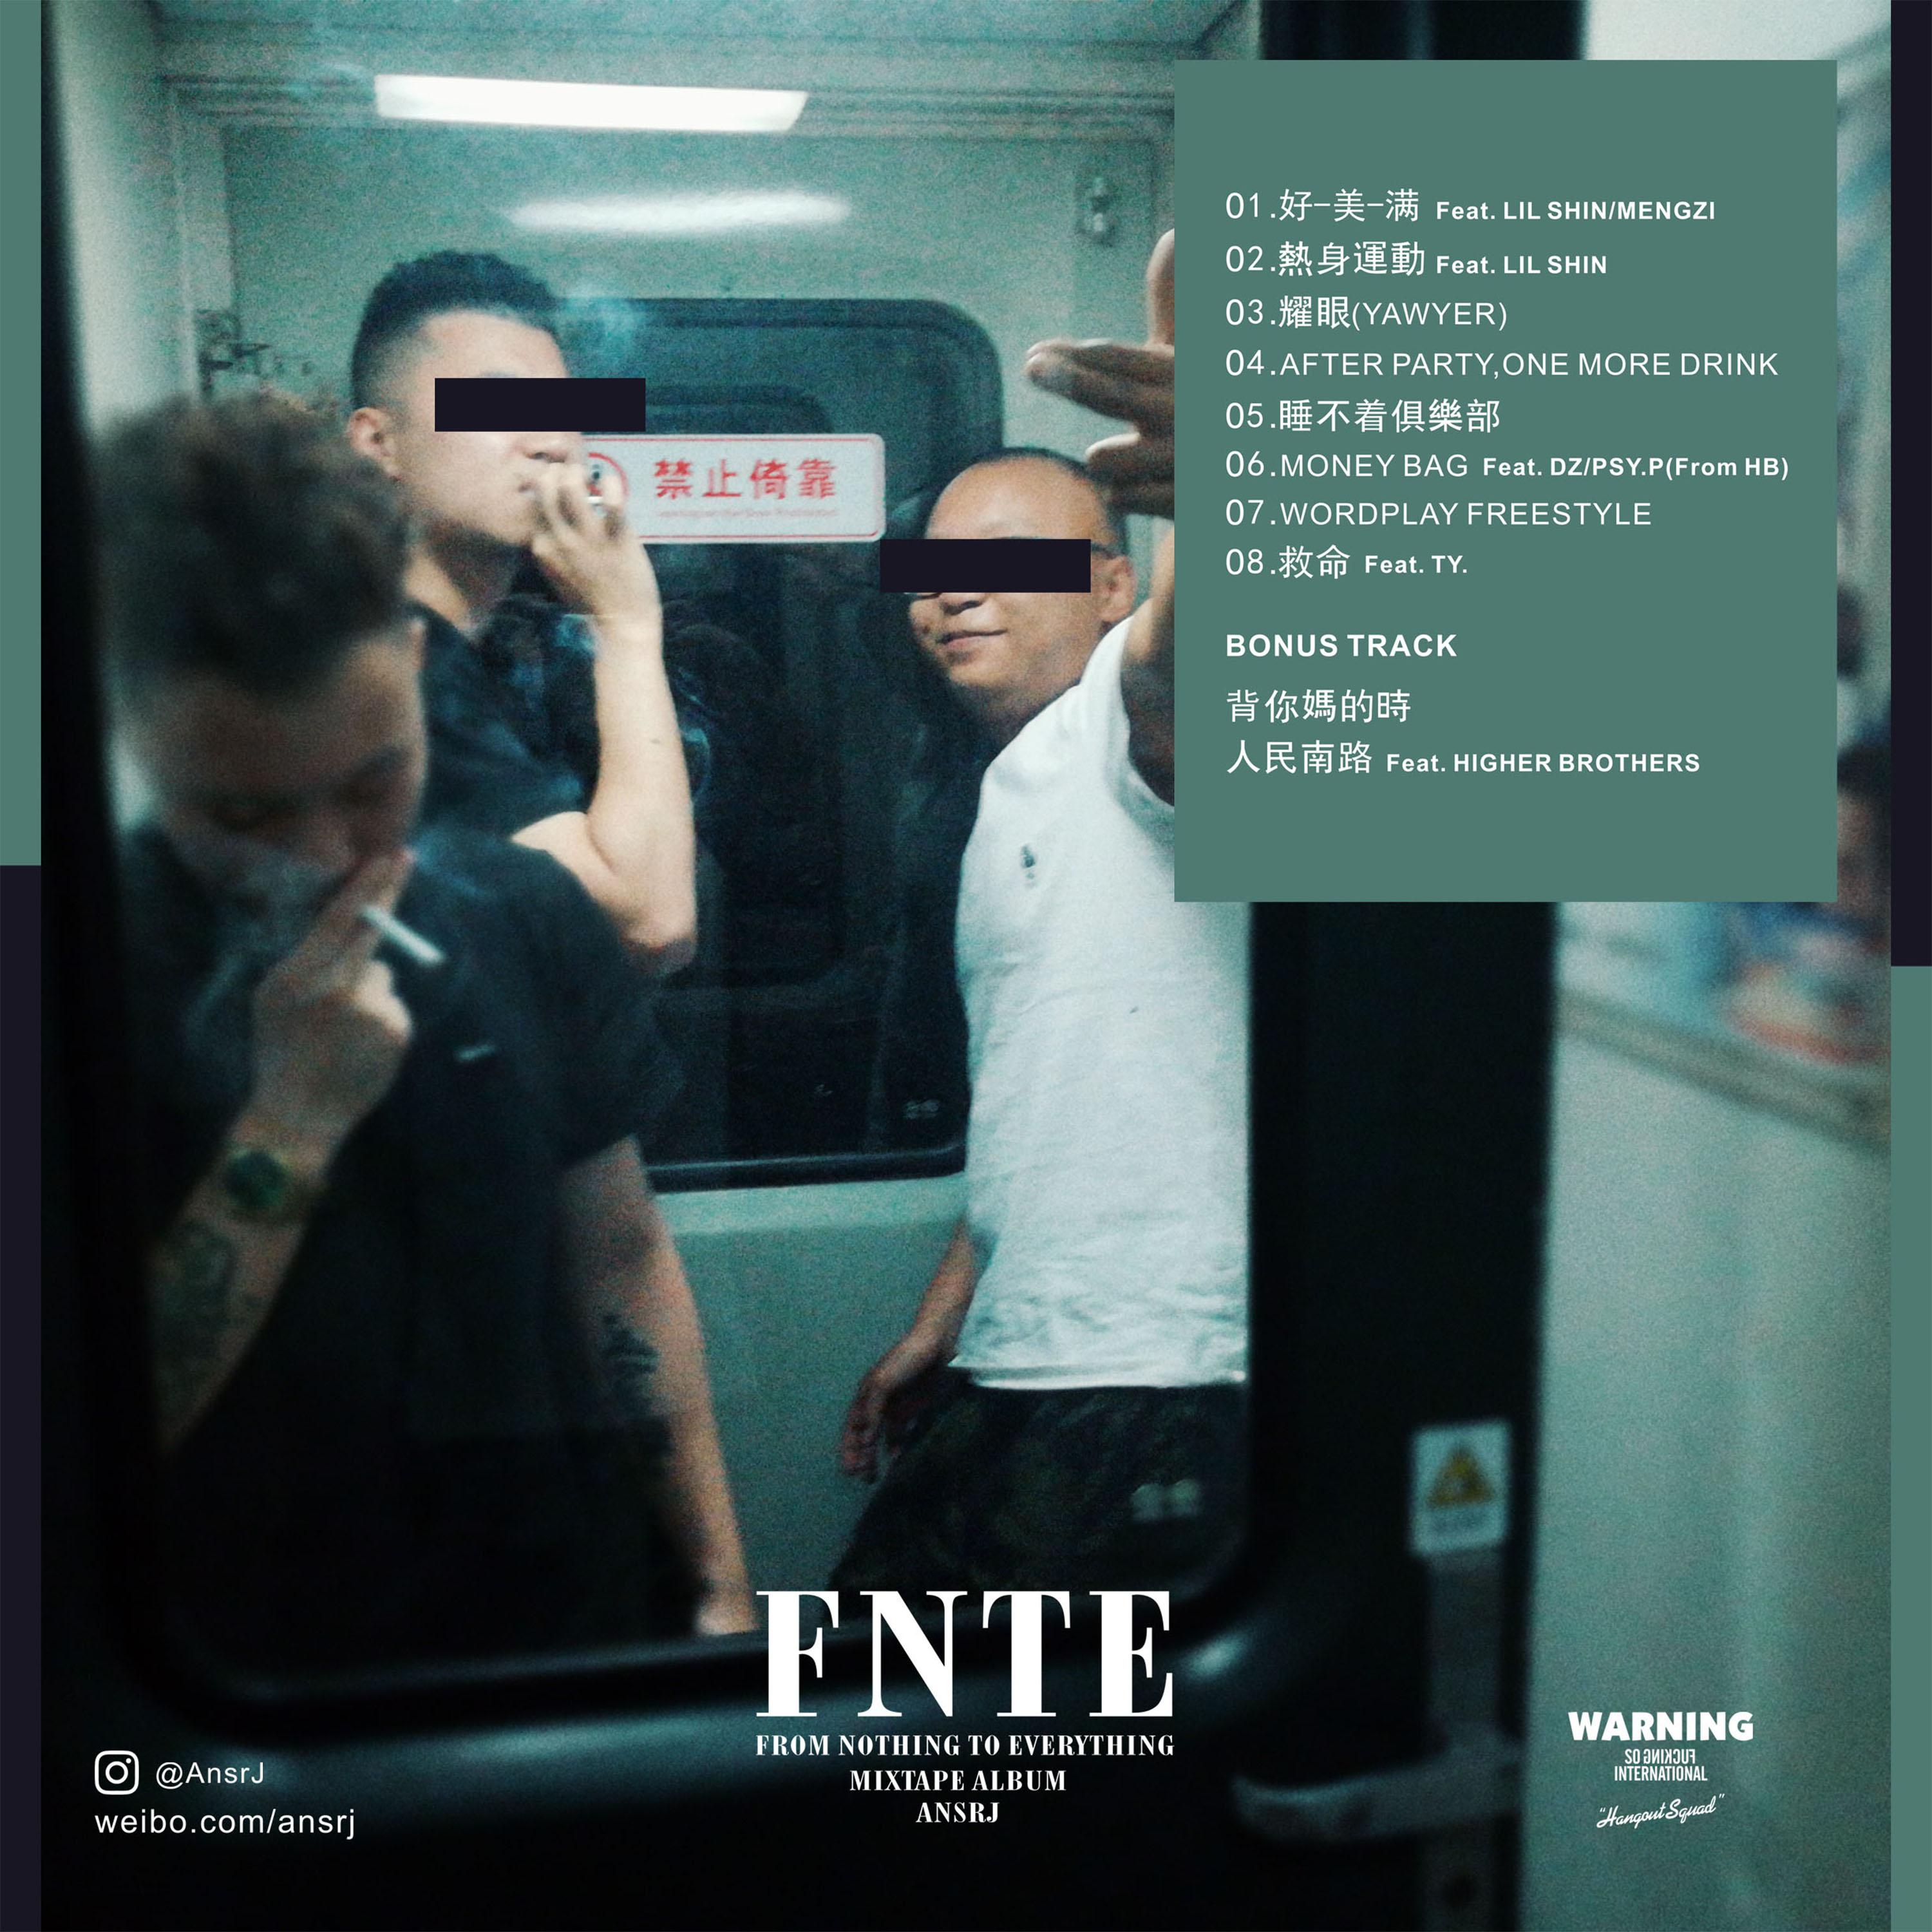 救命歌词 歌手AnsrJ / Ty.-专辑FNTE-单曲《救命》LRC歌词下载